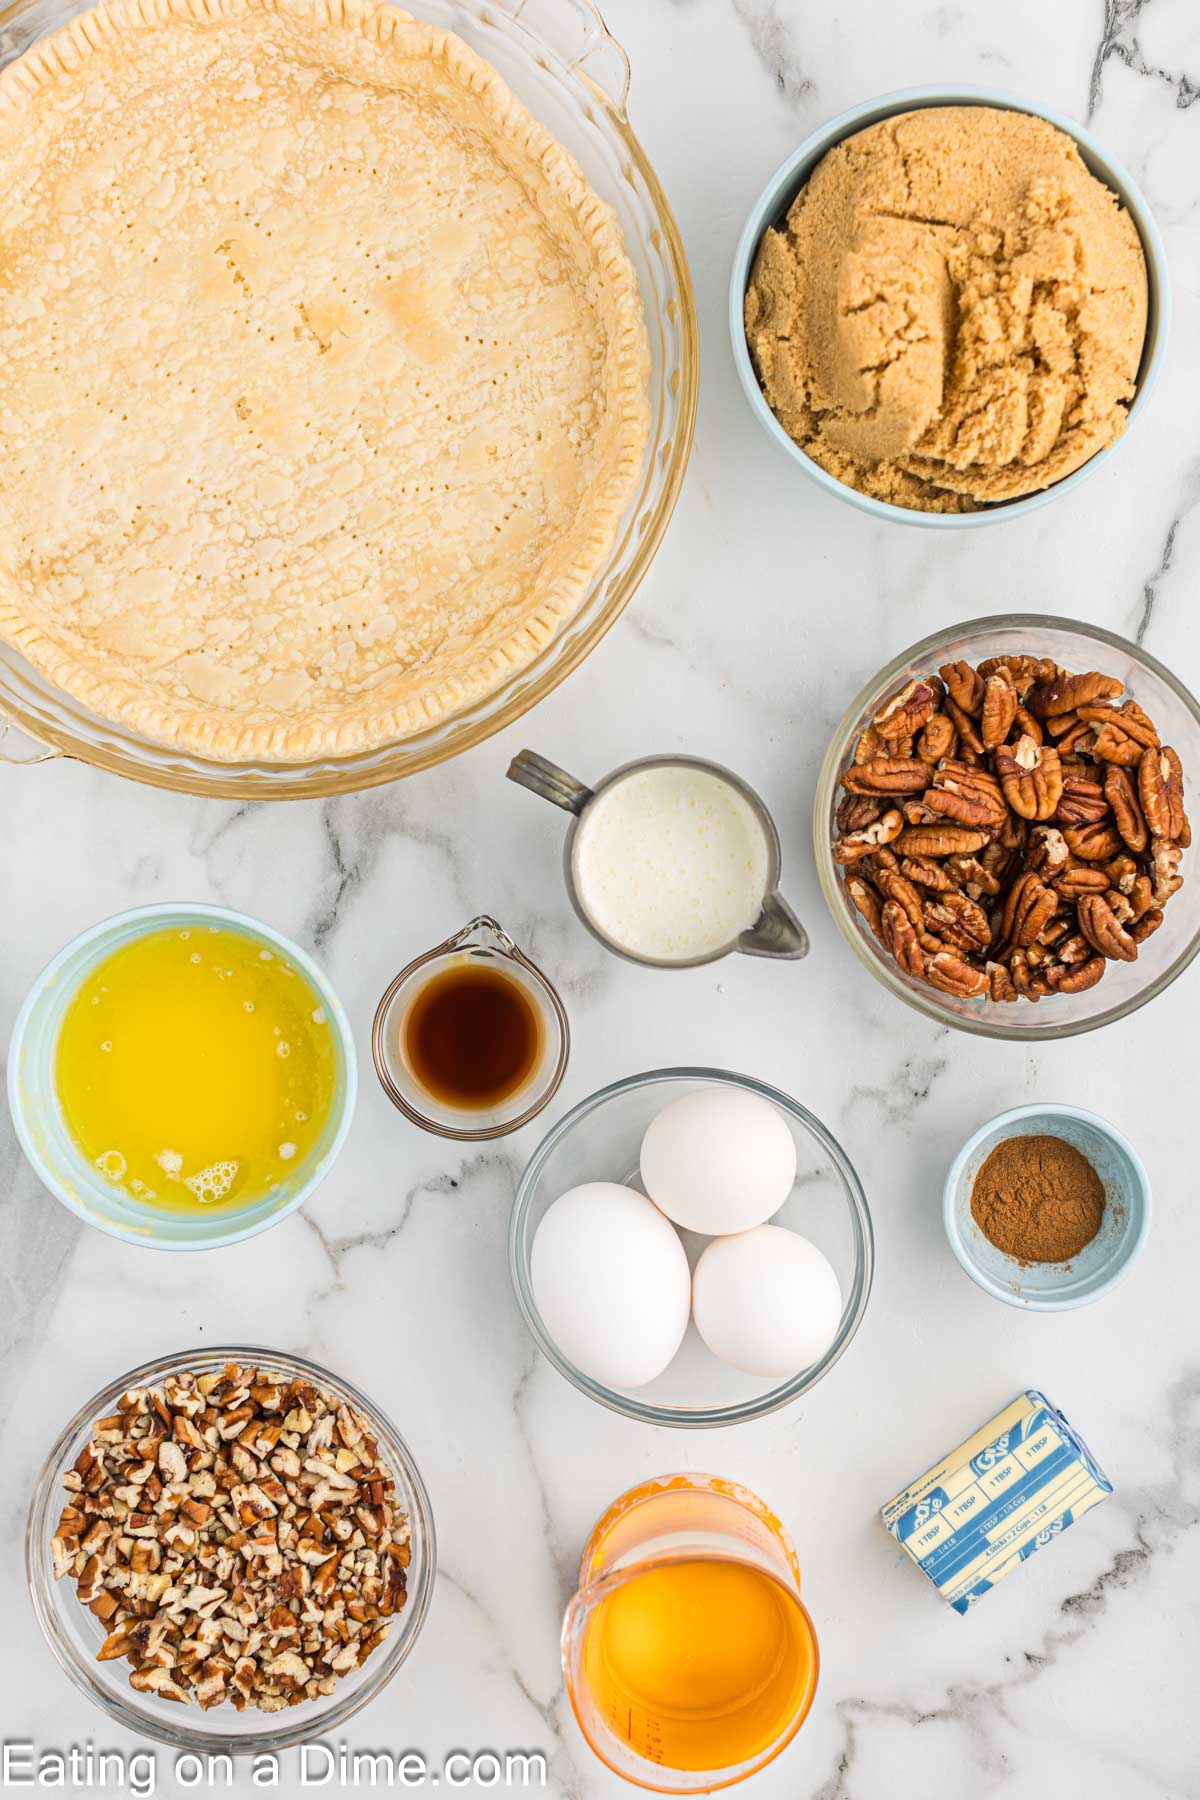 Ingredients needed for Paula Deen Pecan Pie